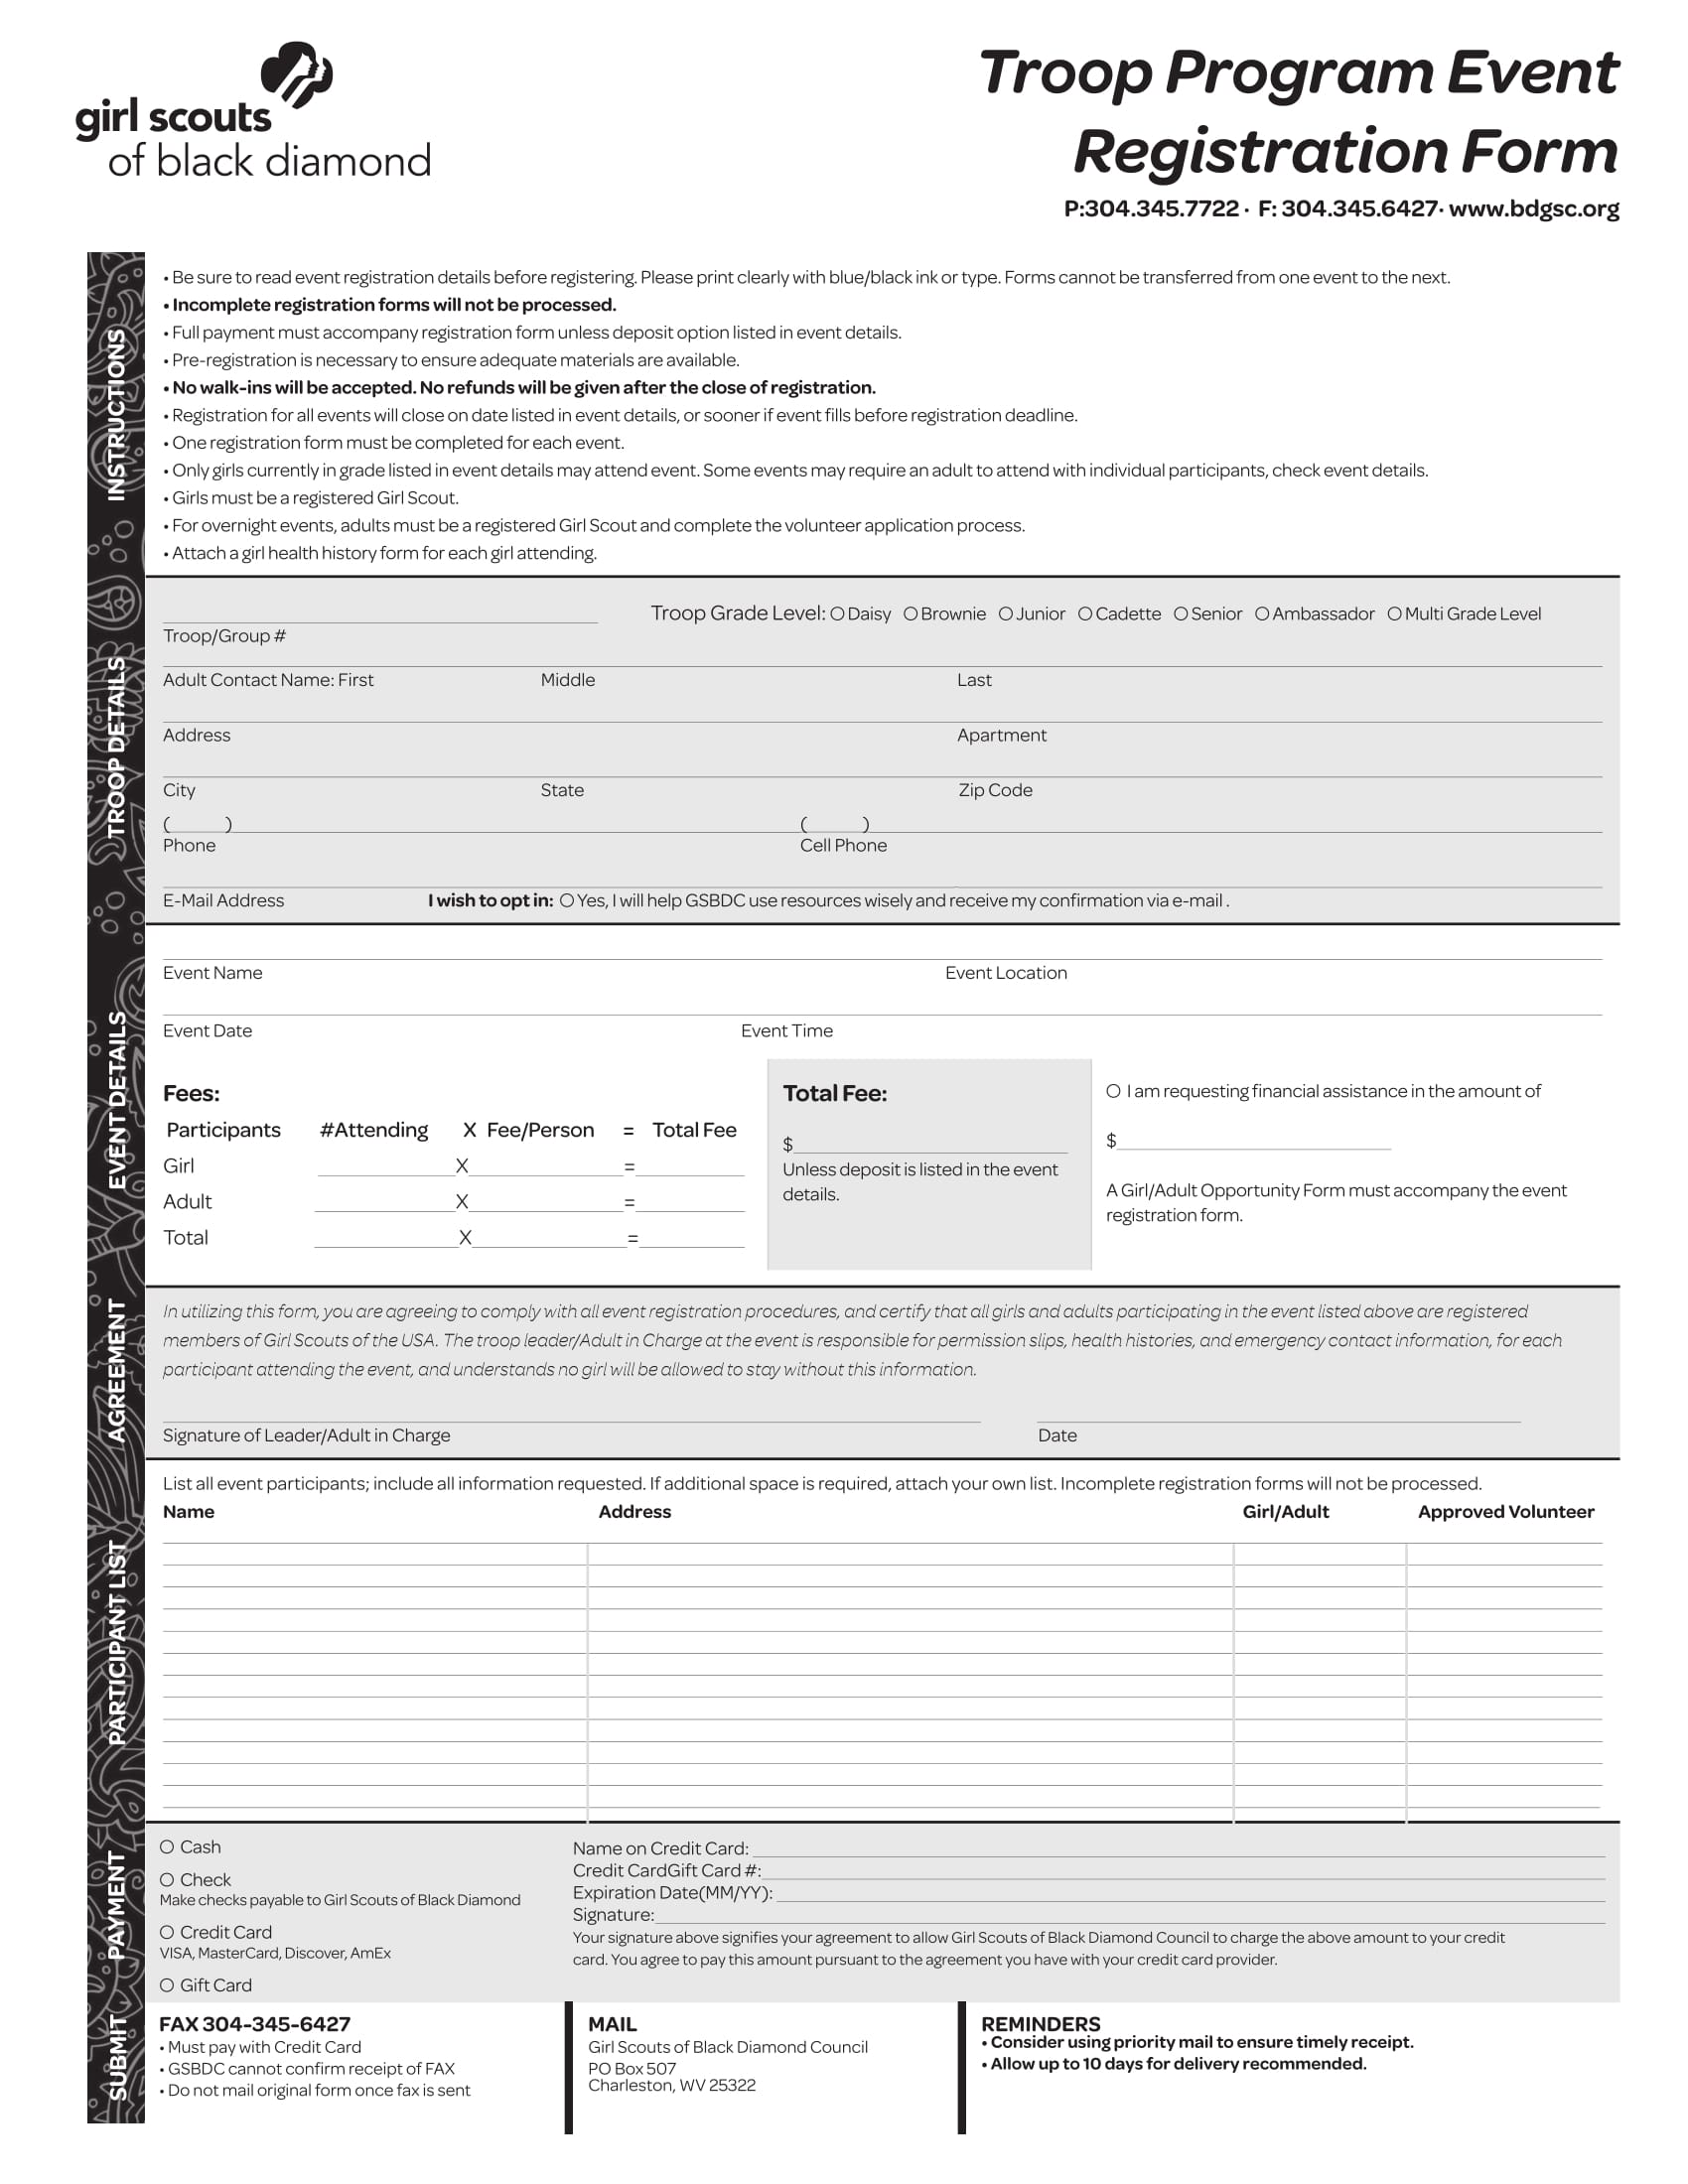 troop program event registration form 1